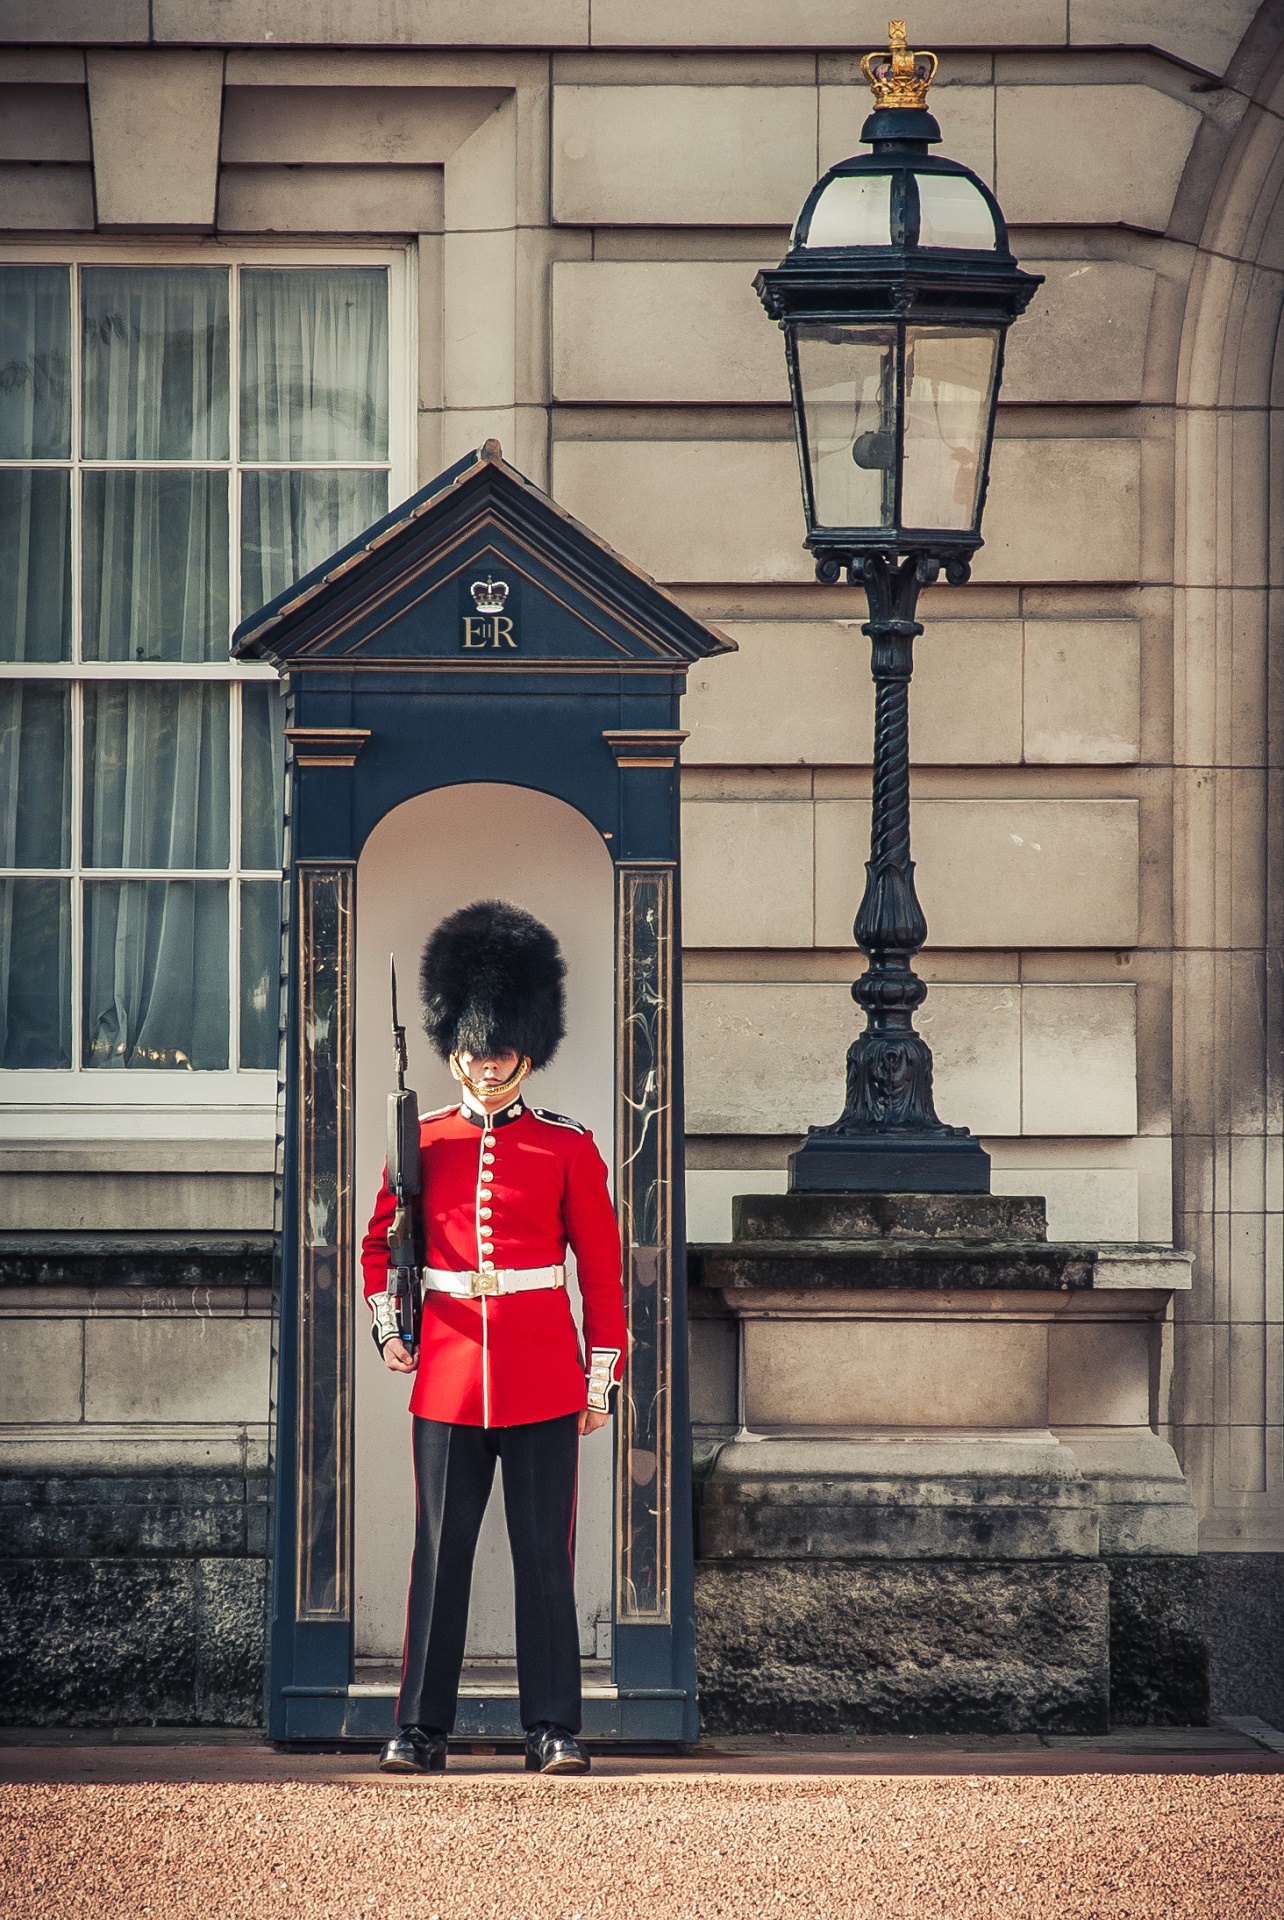 Take a Royal Tour of London – Visit 4 Royal Palaces